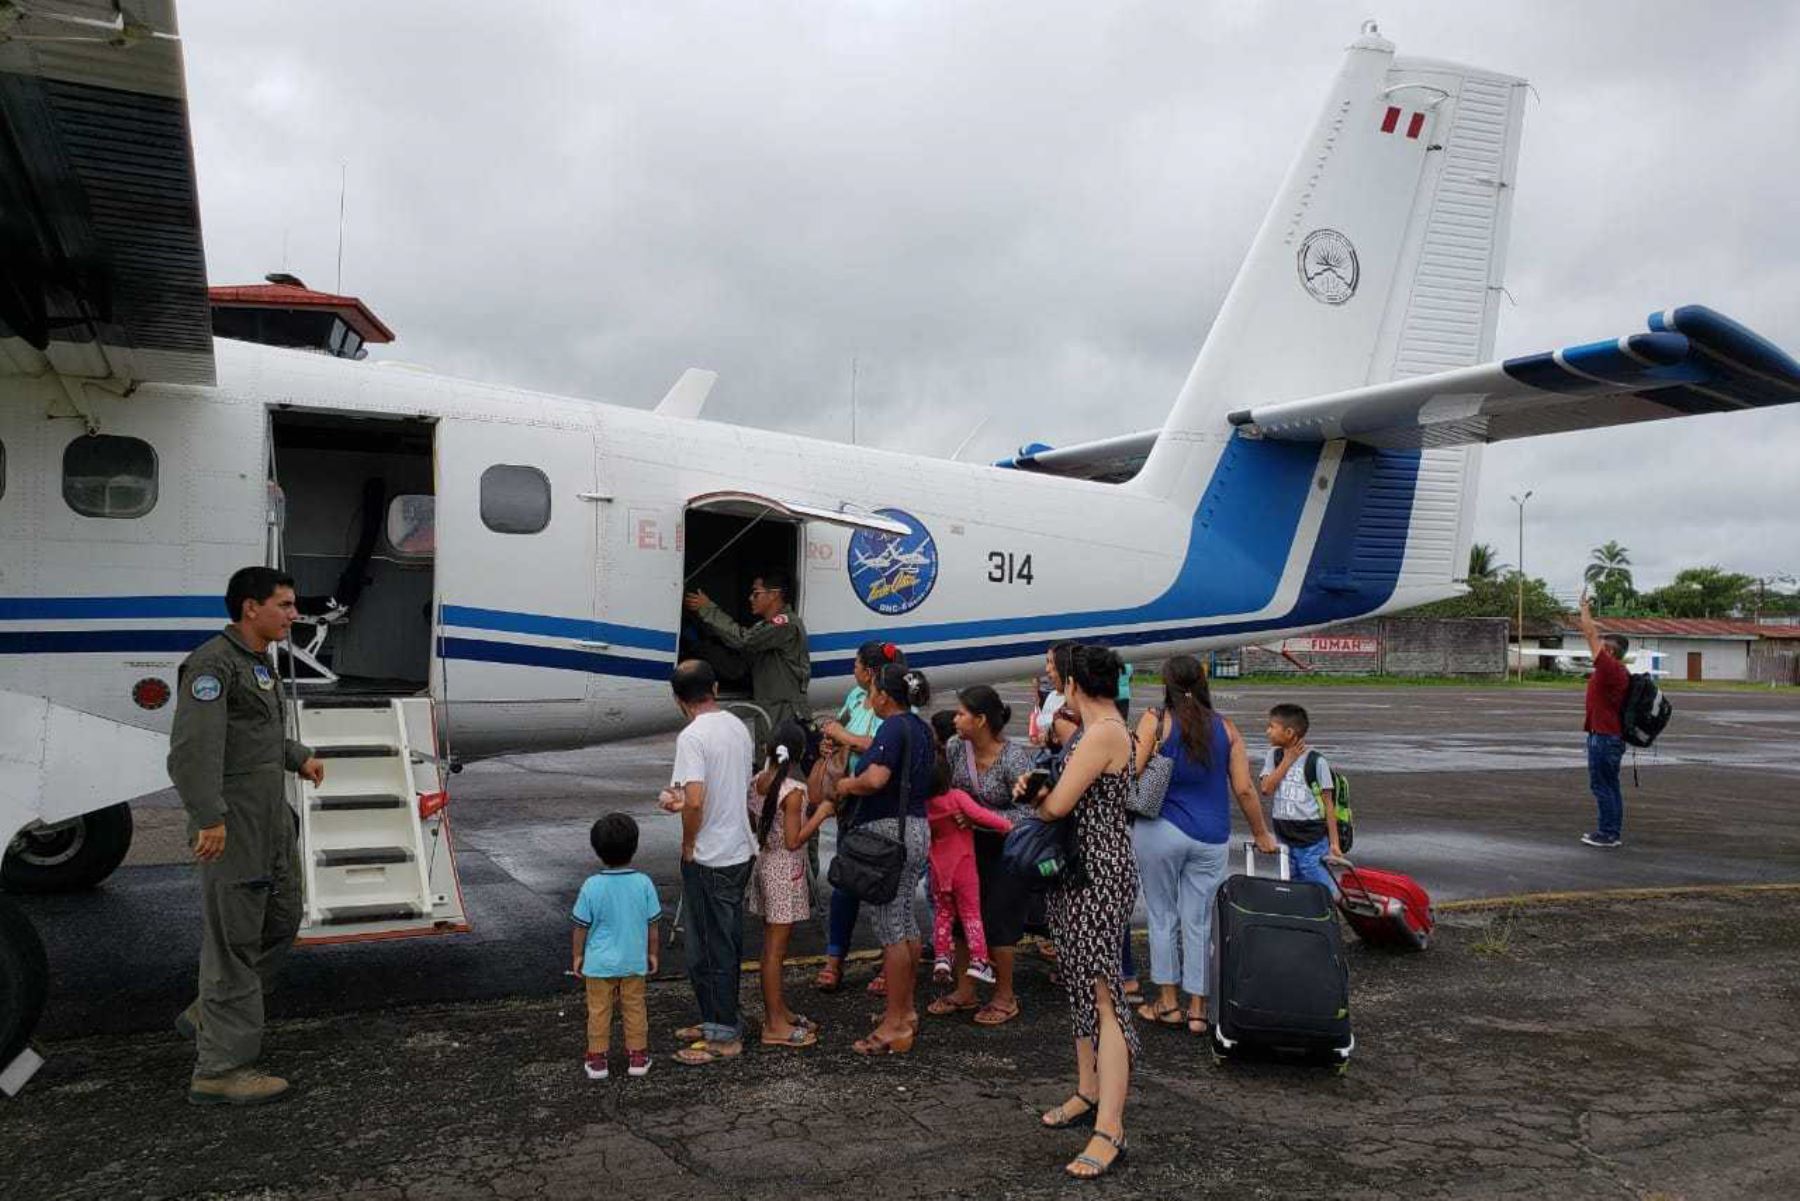 La Fuerza Aérea del Perú (FAP) implementó un puente aéreo entre Tarapoto y Yurimaguas, en la región San Martín, para atender las necesidades de la población afectada por el bloqueo de carreteras debido al hundimiento de la vía que se registró entre los kilómetros 30 y 31 de la carretera IIRSA Norte.